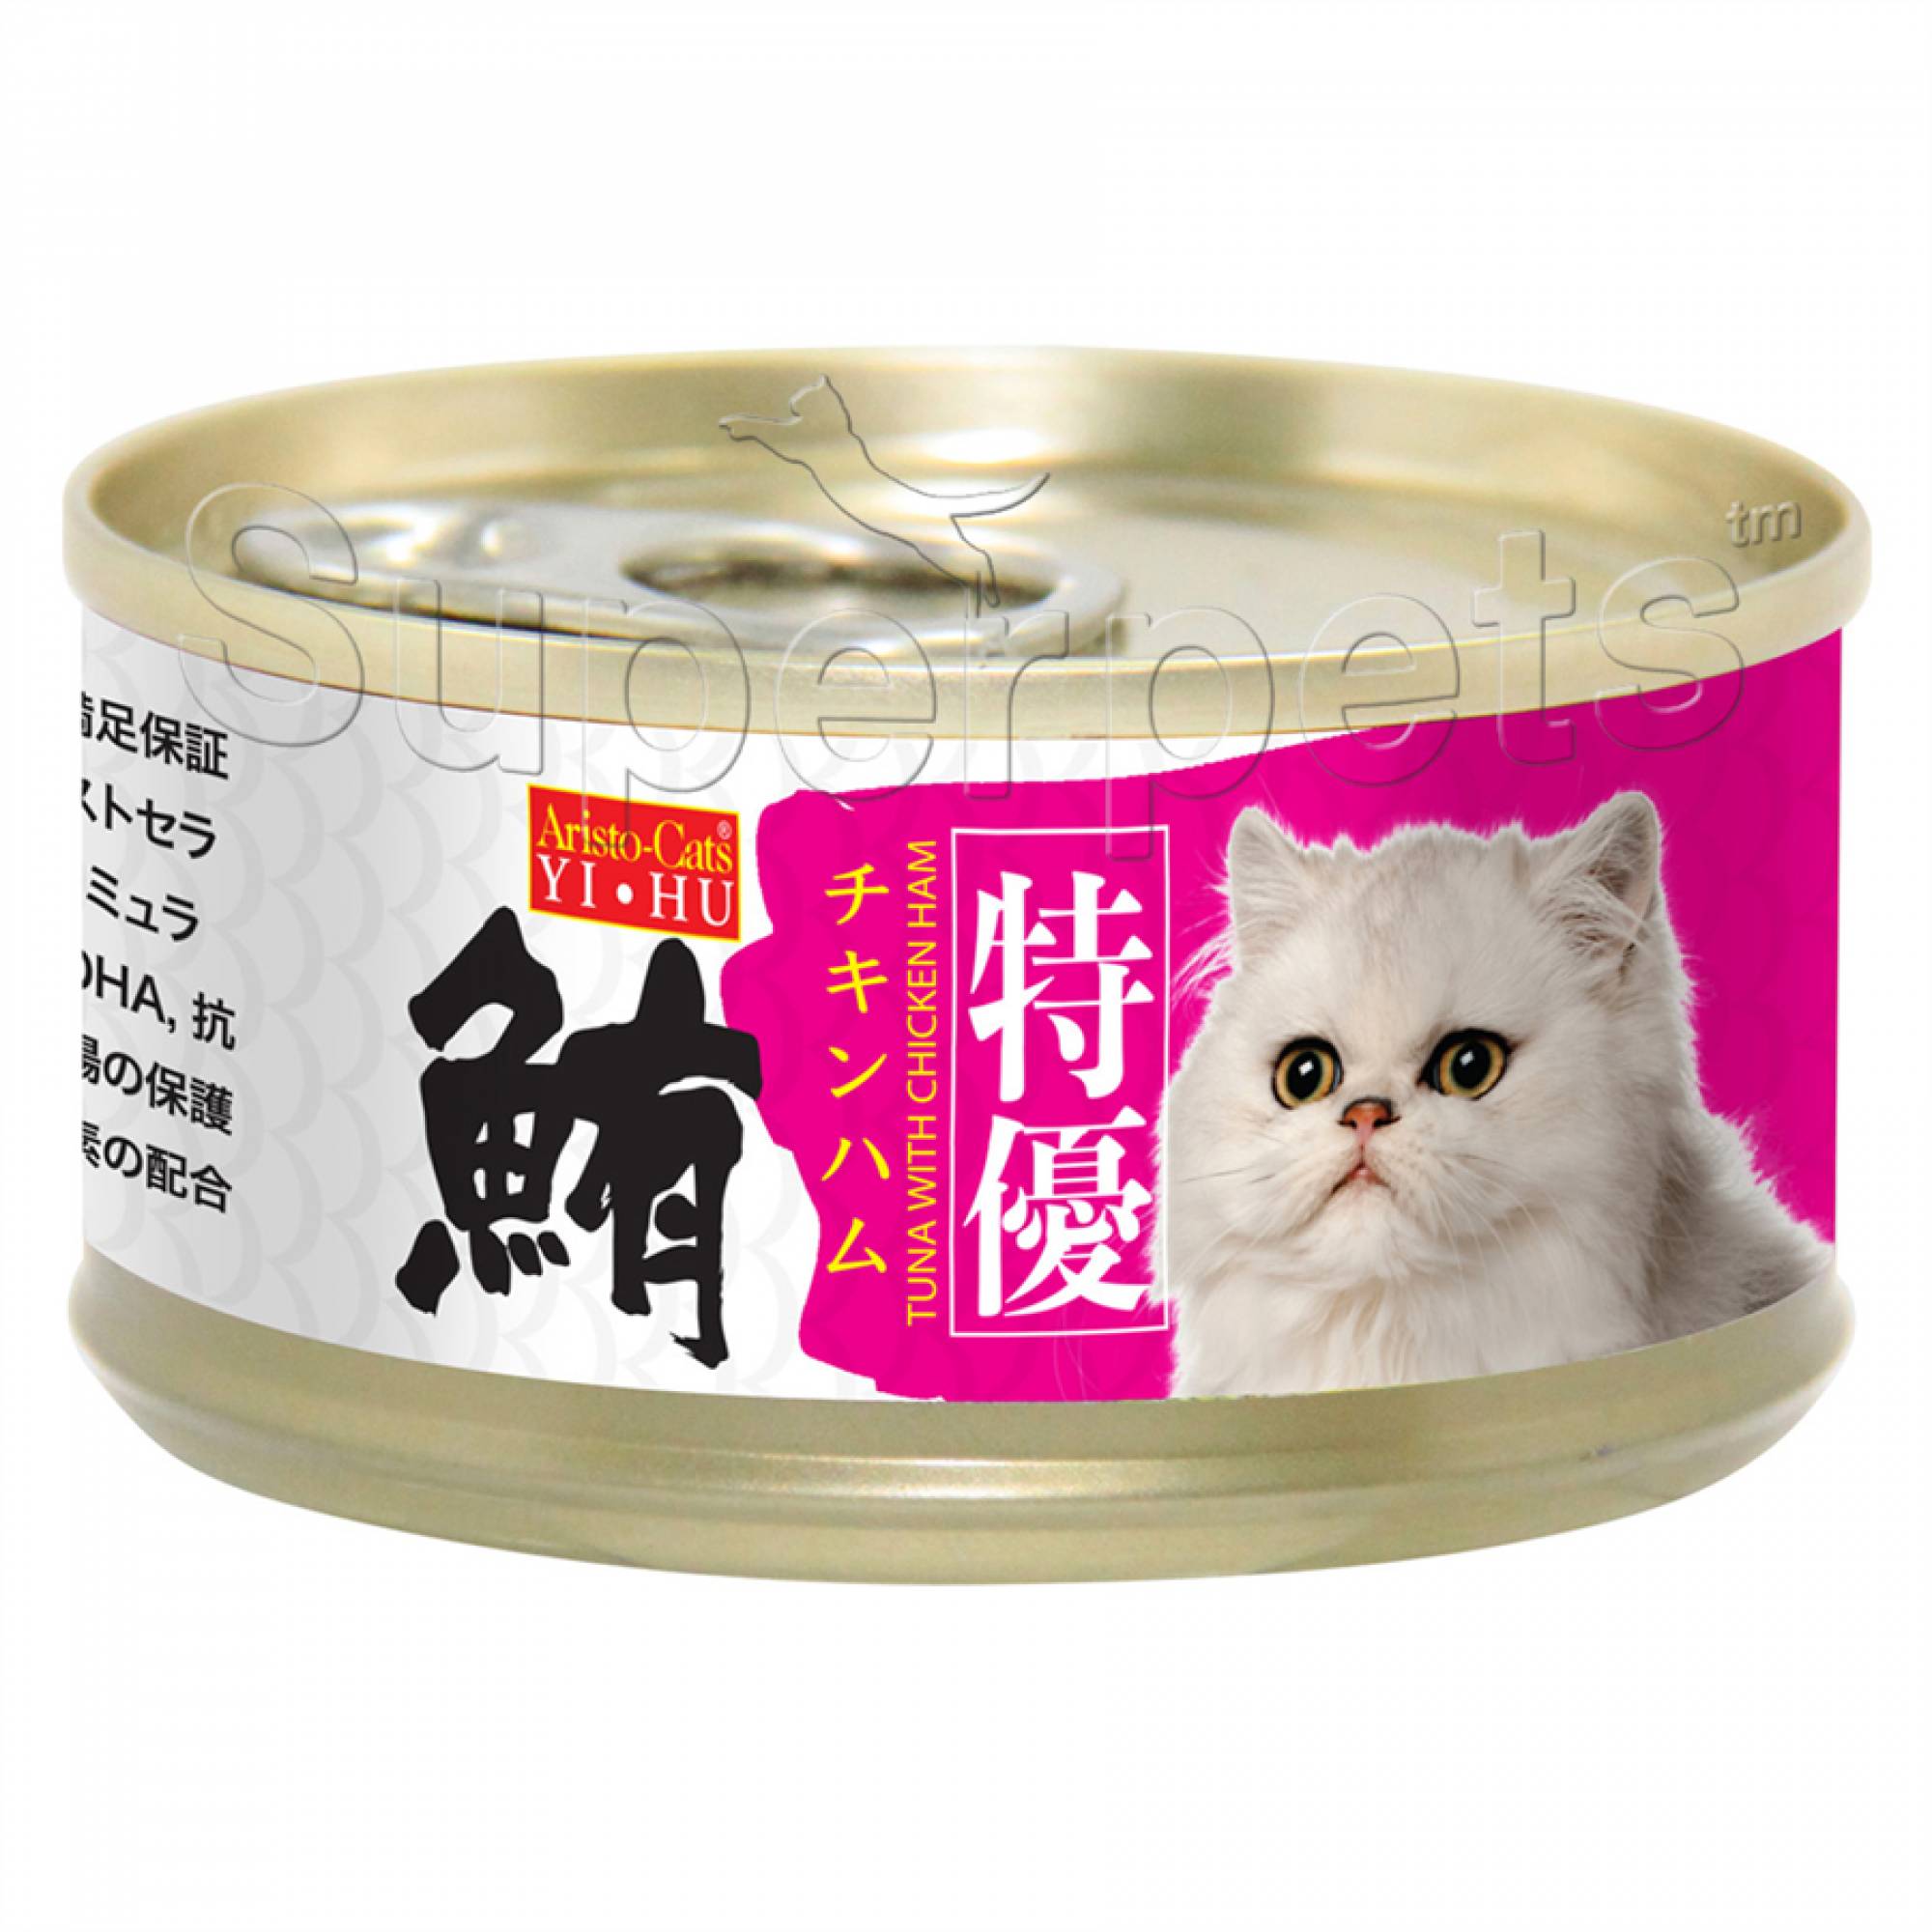 Aristo-Cats - Premium Plus (Export) - Tuna with Chicken Ham 80g